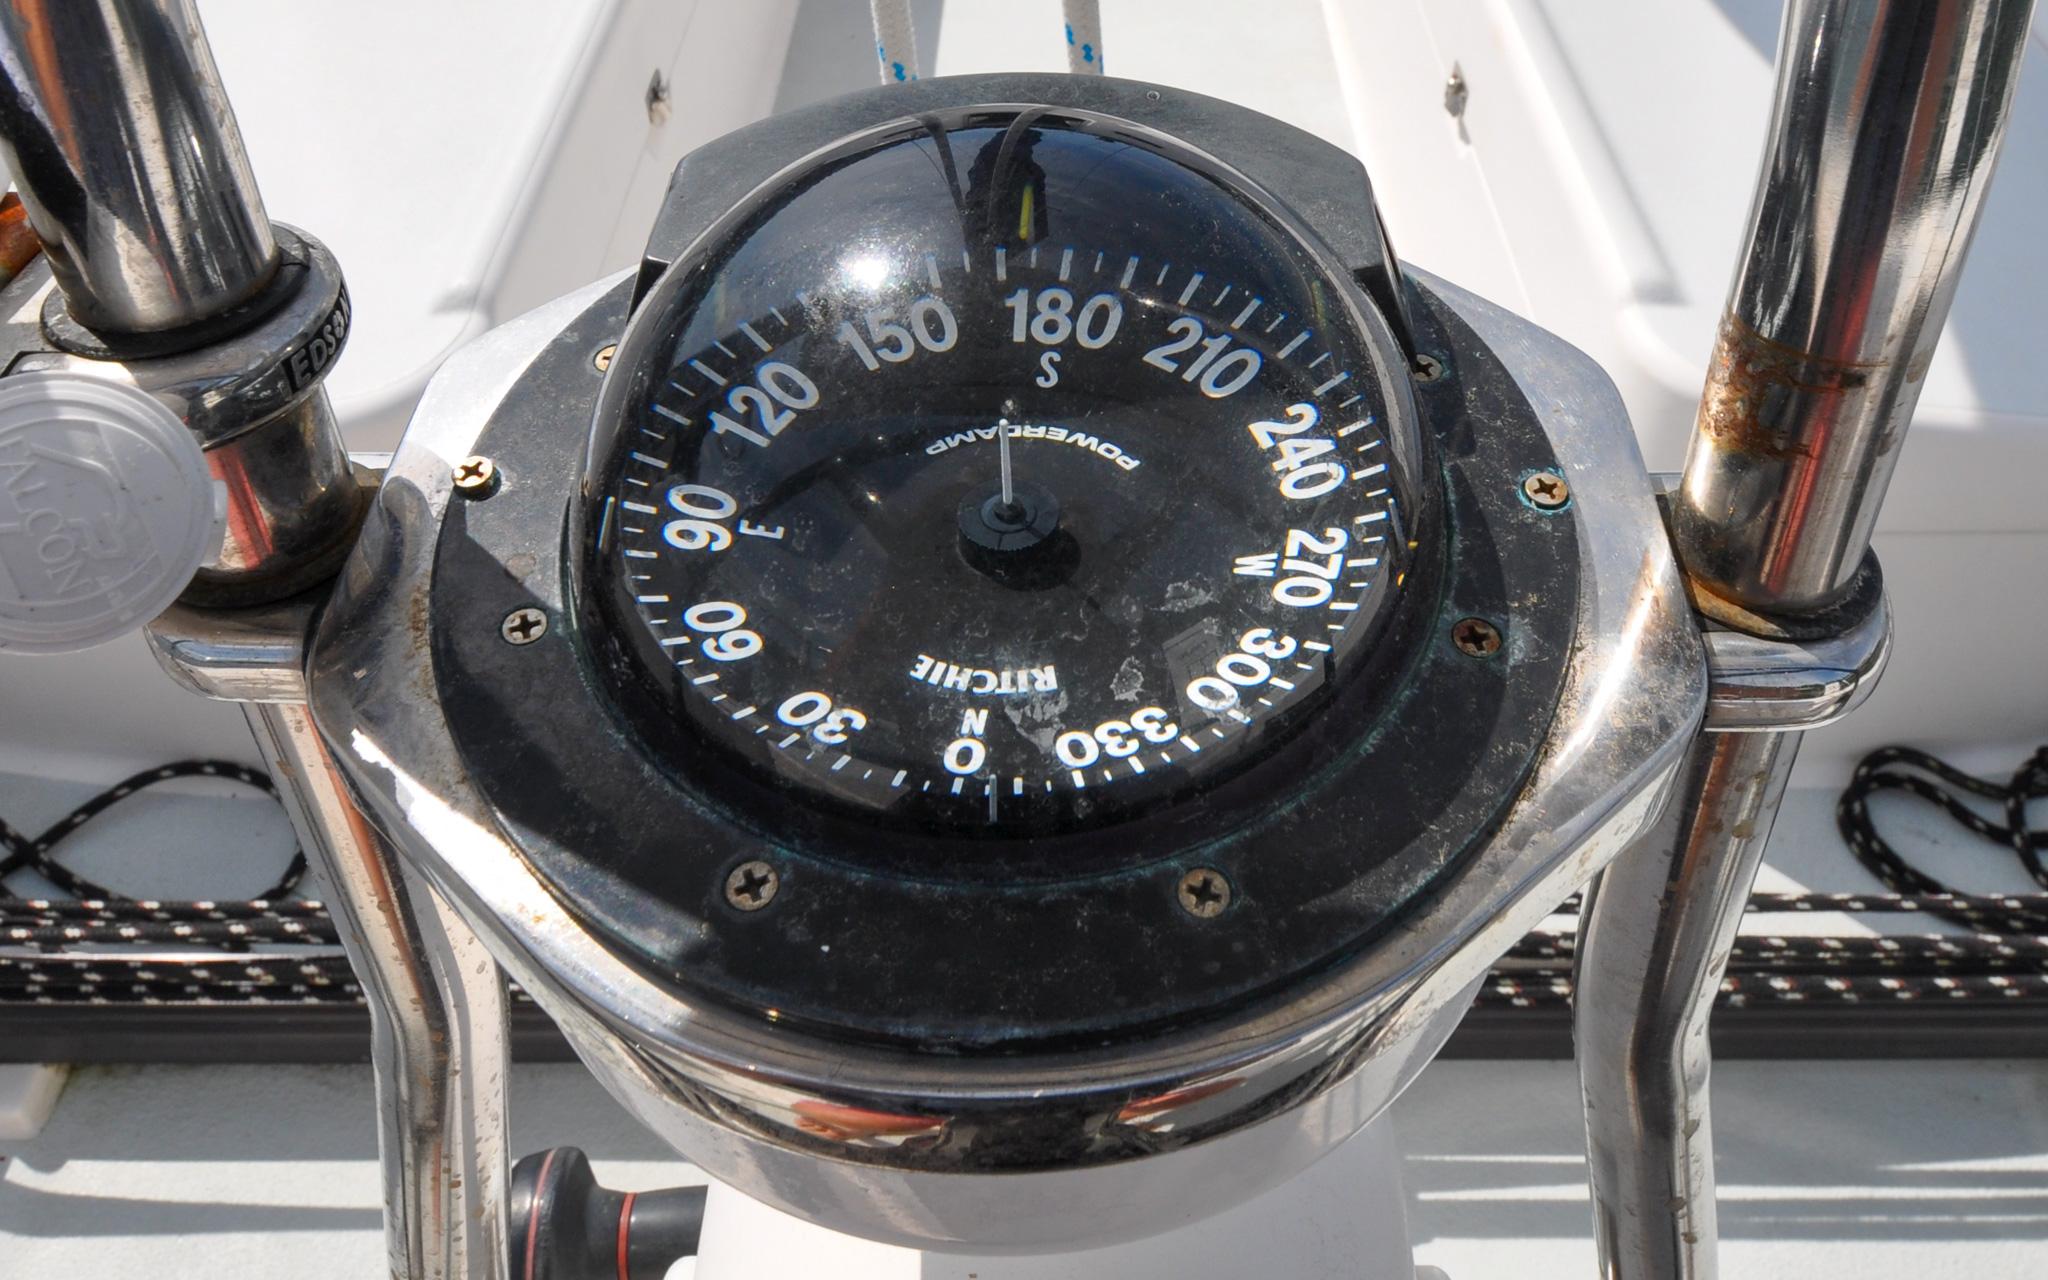 J/124 - Bel Canto - Cockpit - Helm Station - Ships Compass